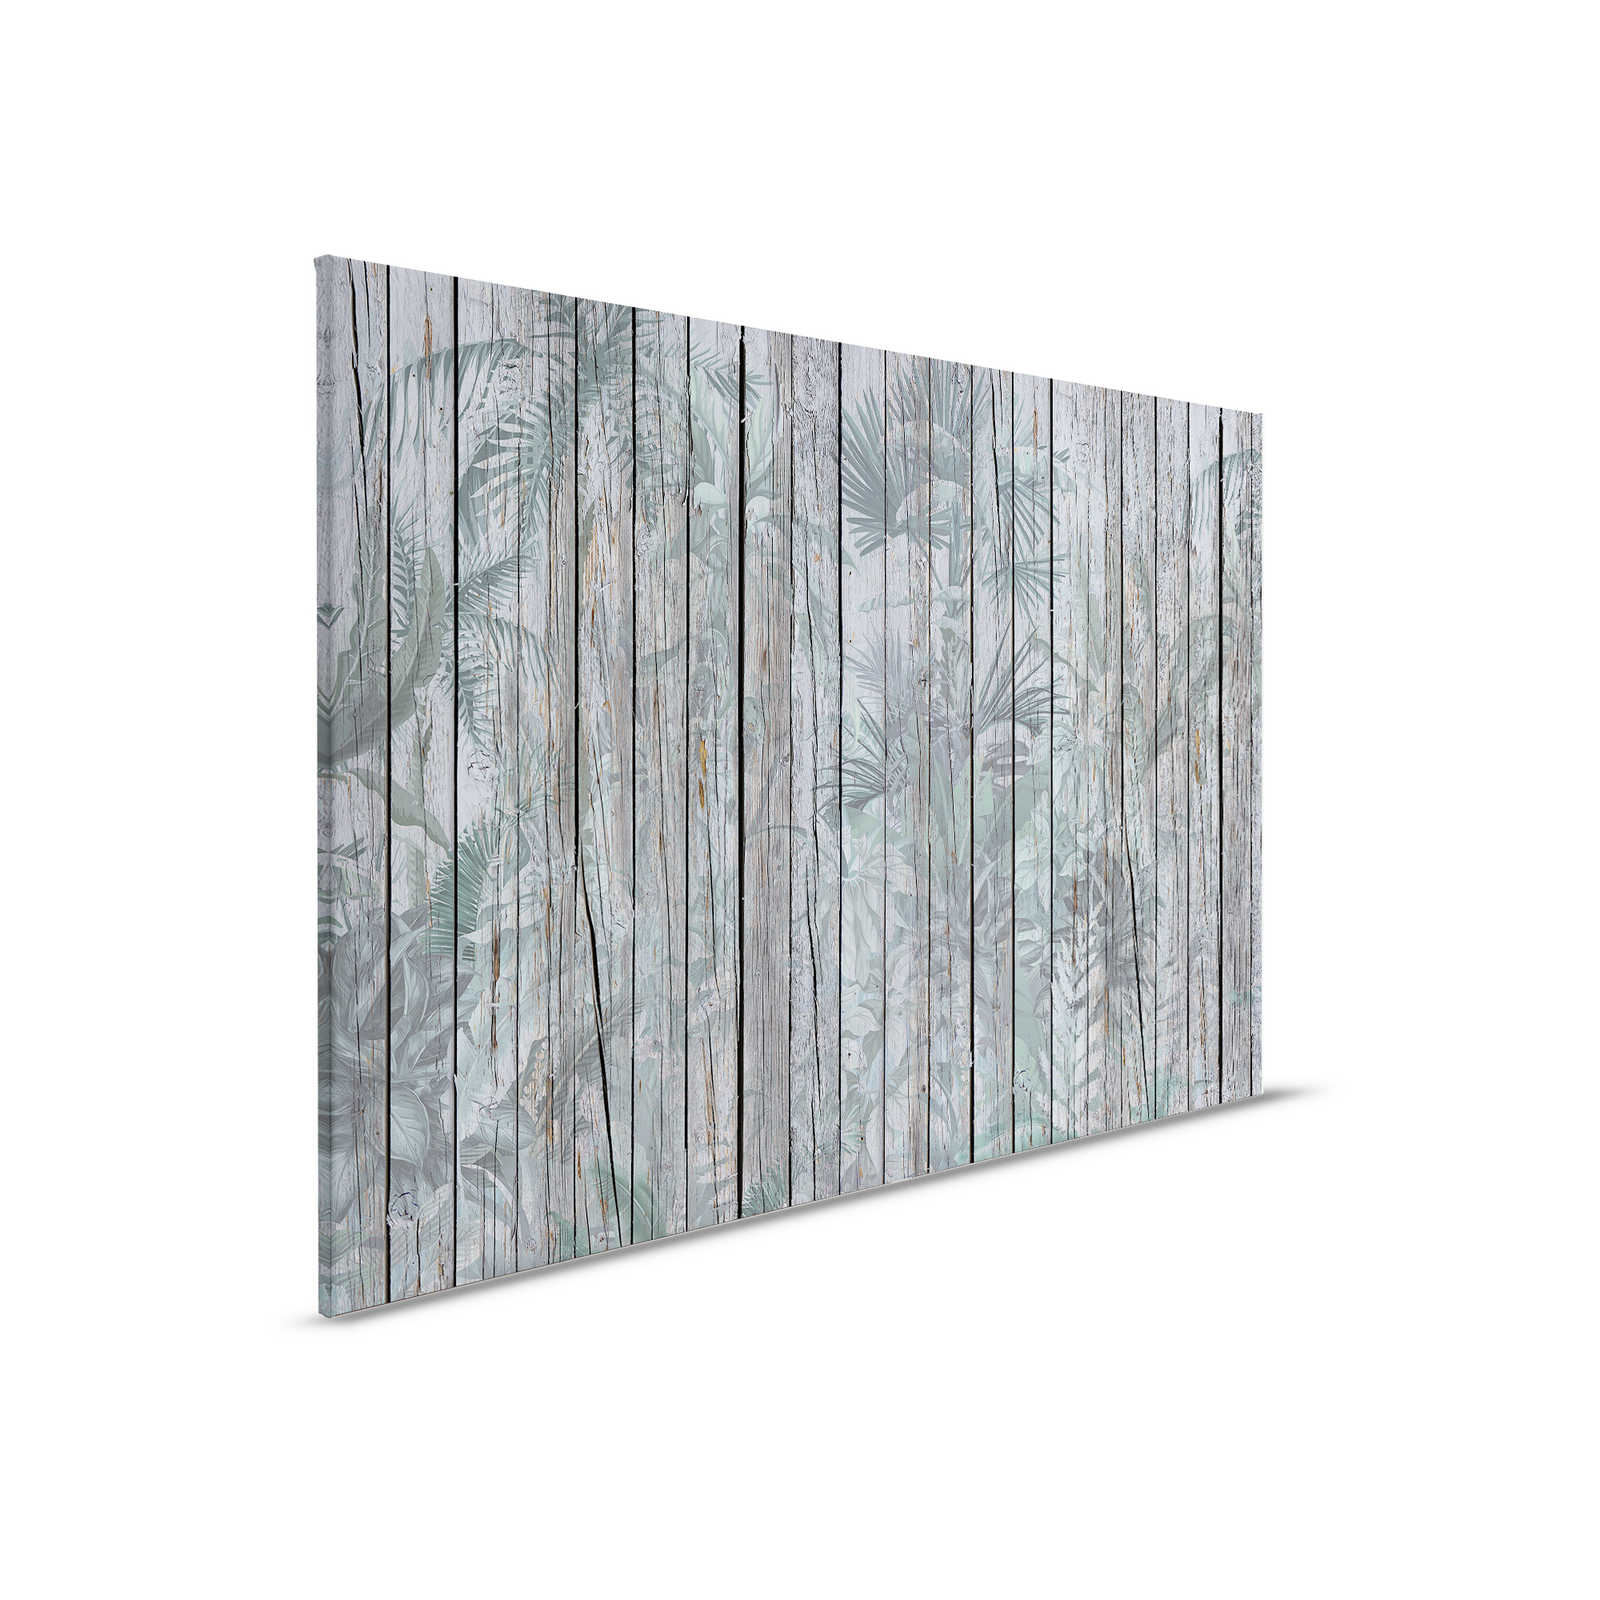 Tableau toile bois avec plantes de la jungle - 0,90 m x 0,60 m
